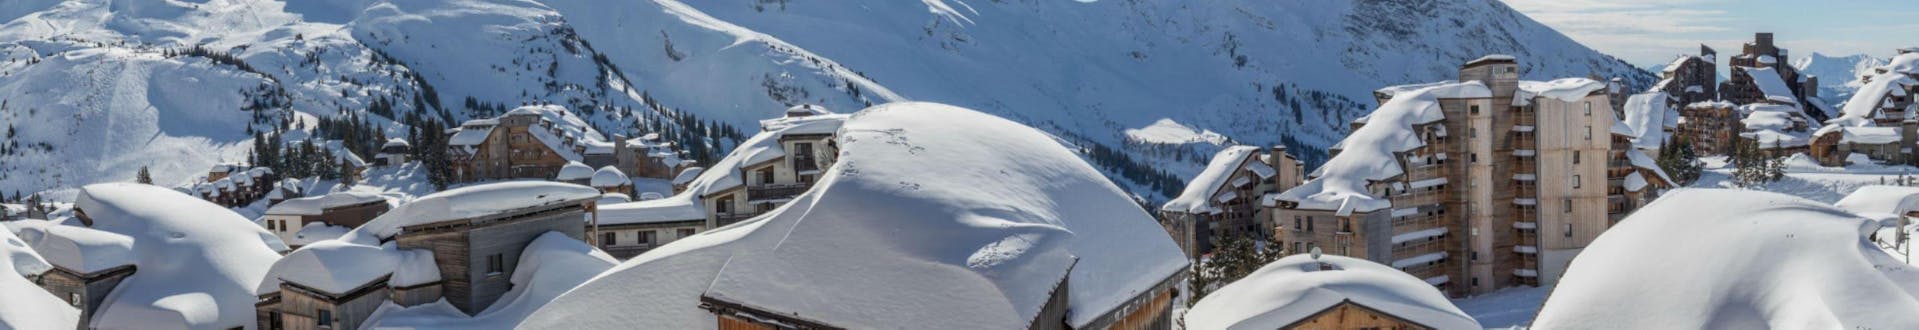 Une vue panoramique des chalets et hôtels recouverts de neige de la station de ski française d'Avoriaz, où les écoles de ski locales proposent un large choix de cours de ski.